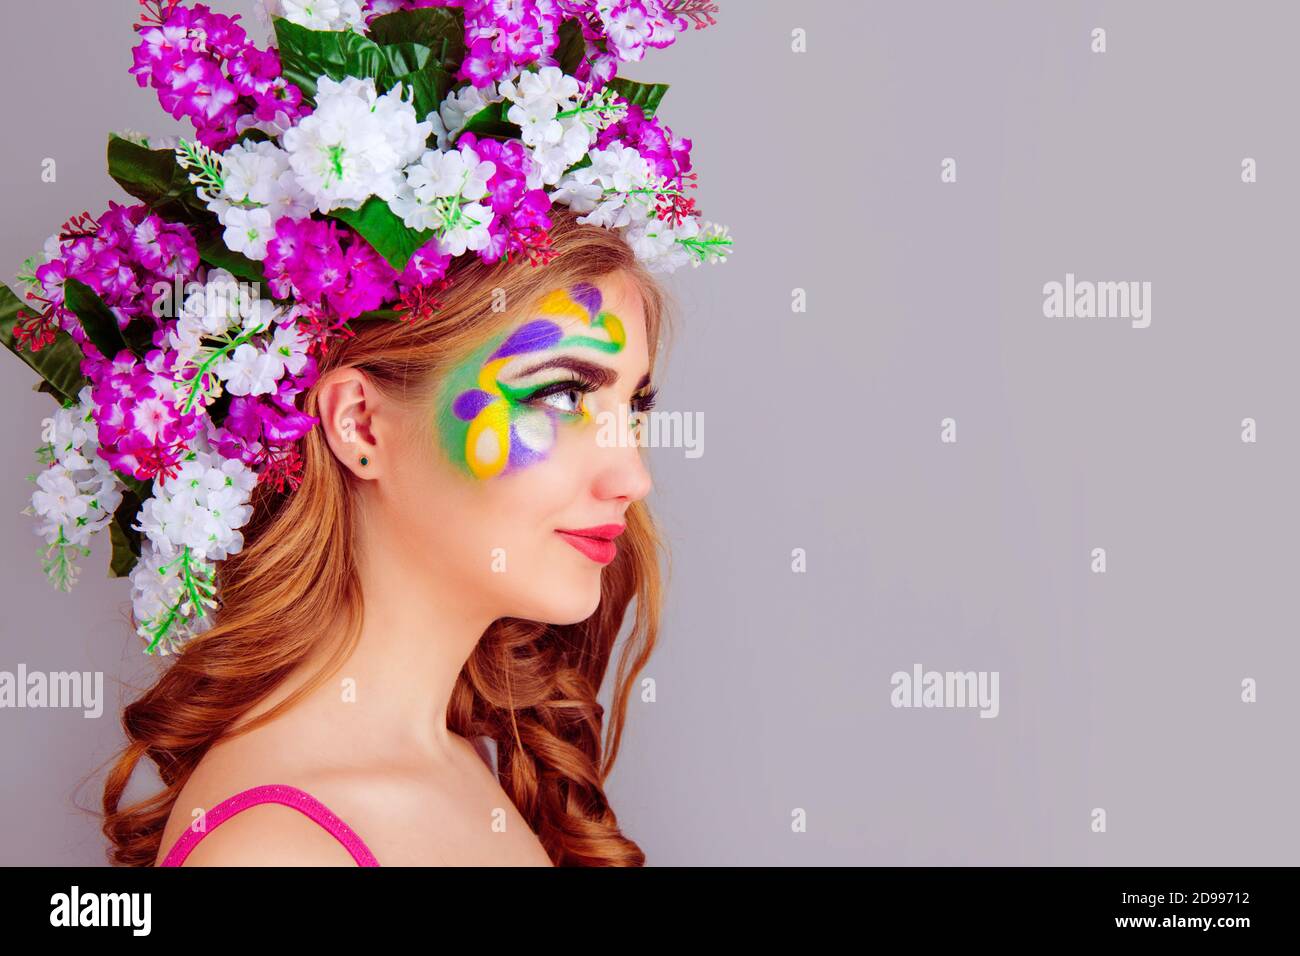 Bella giovane donna con fascia floreale in fiori lilla sul profilo laterale – isolato su sfondo viola chiaro. lan corpo espreesione volto umano positivo Foto Stock